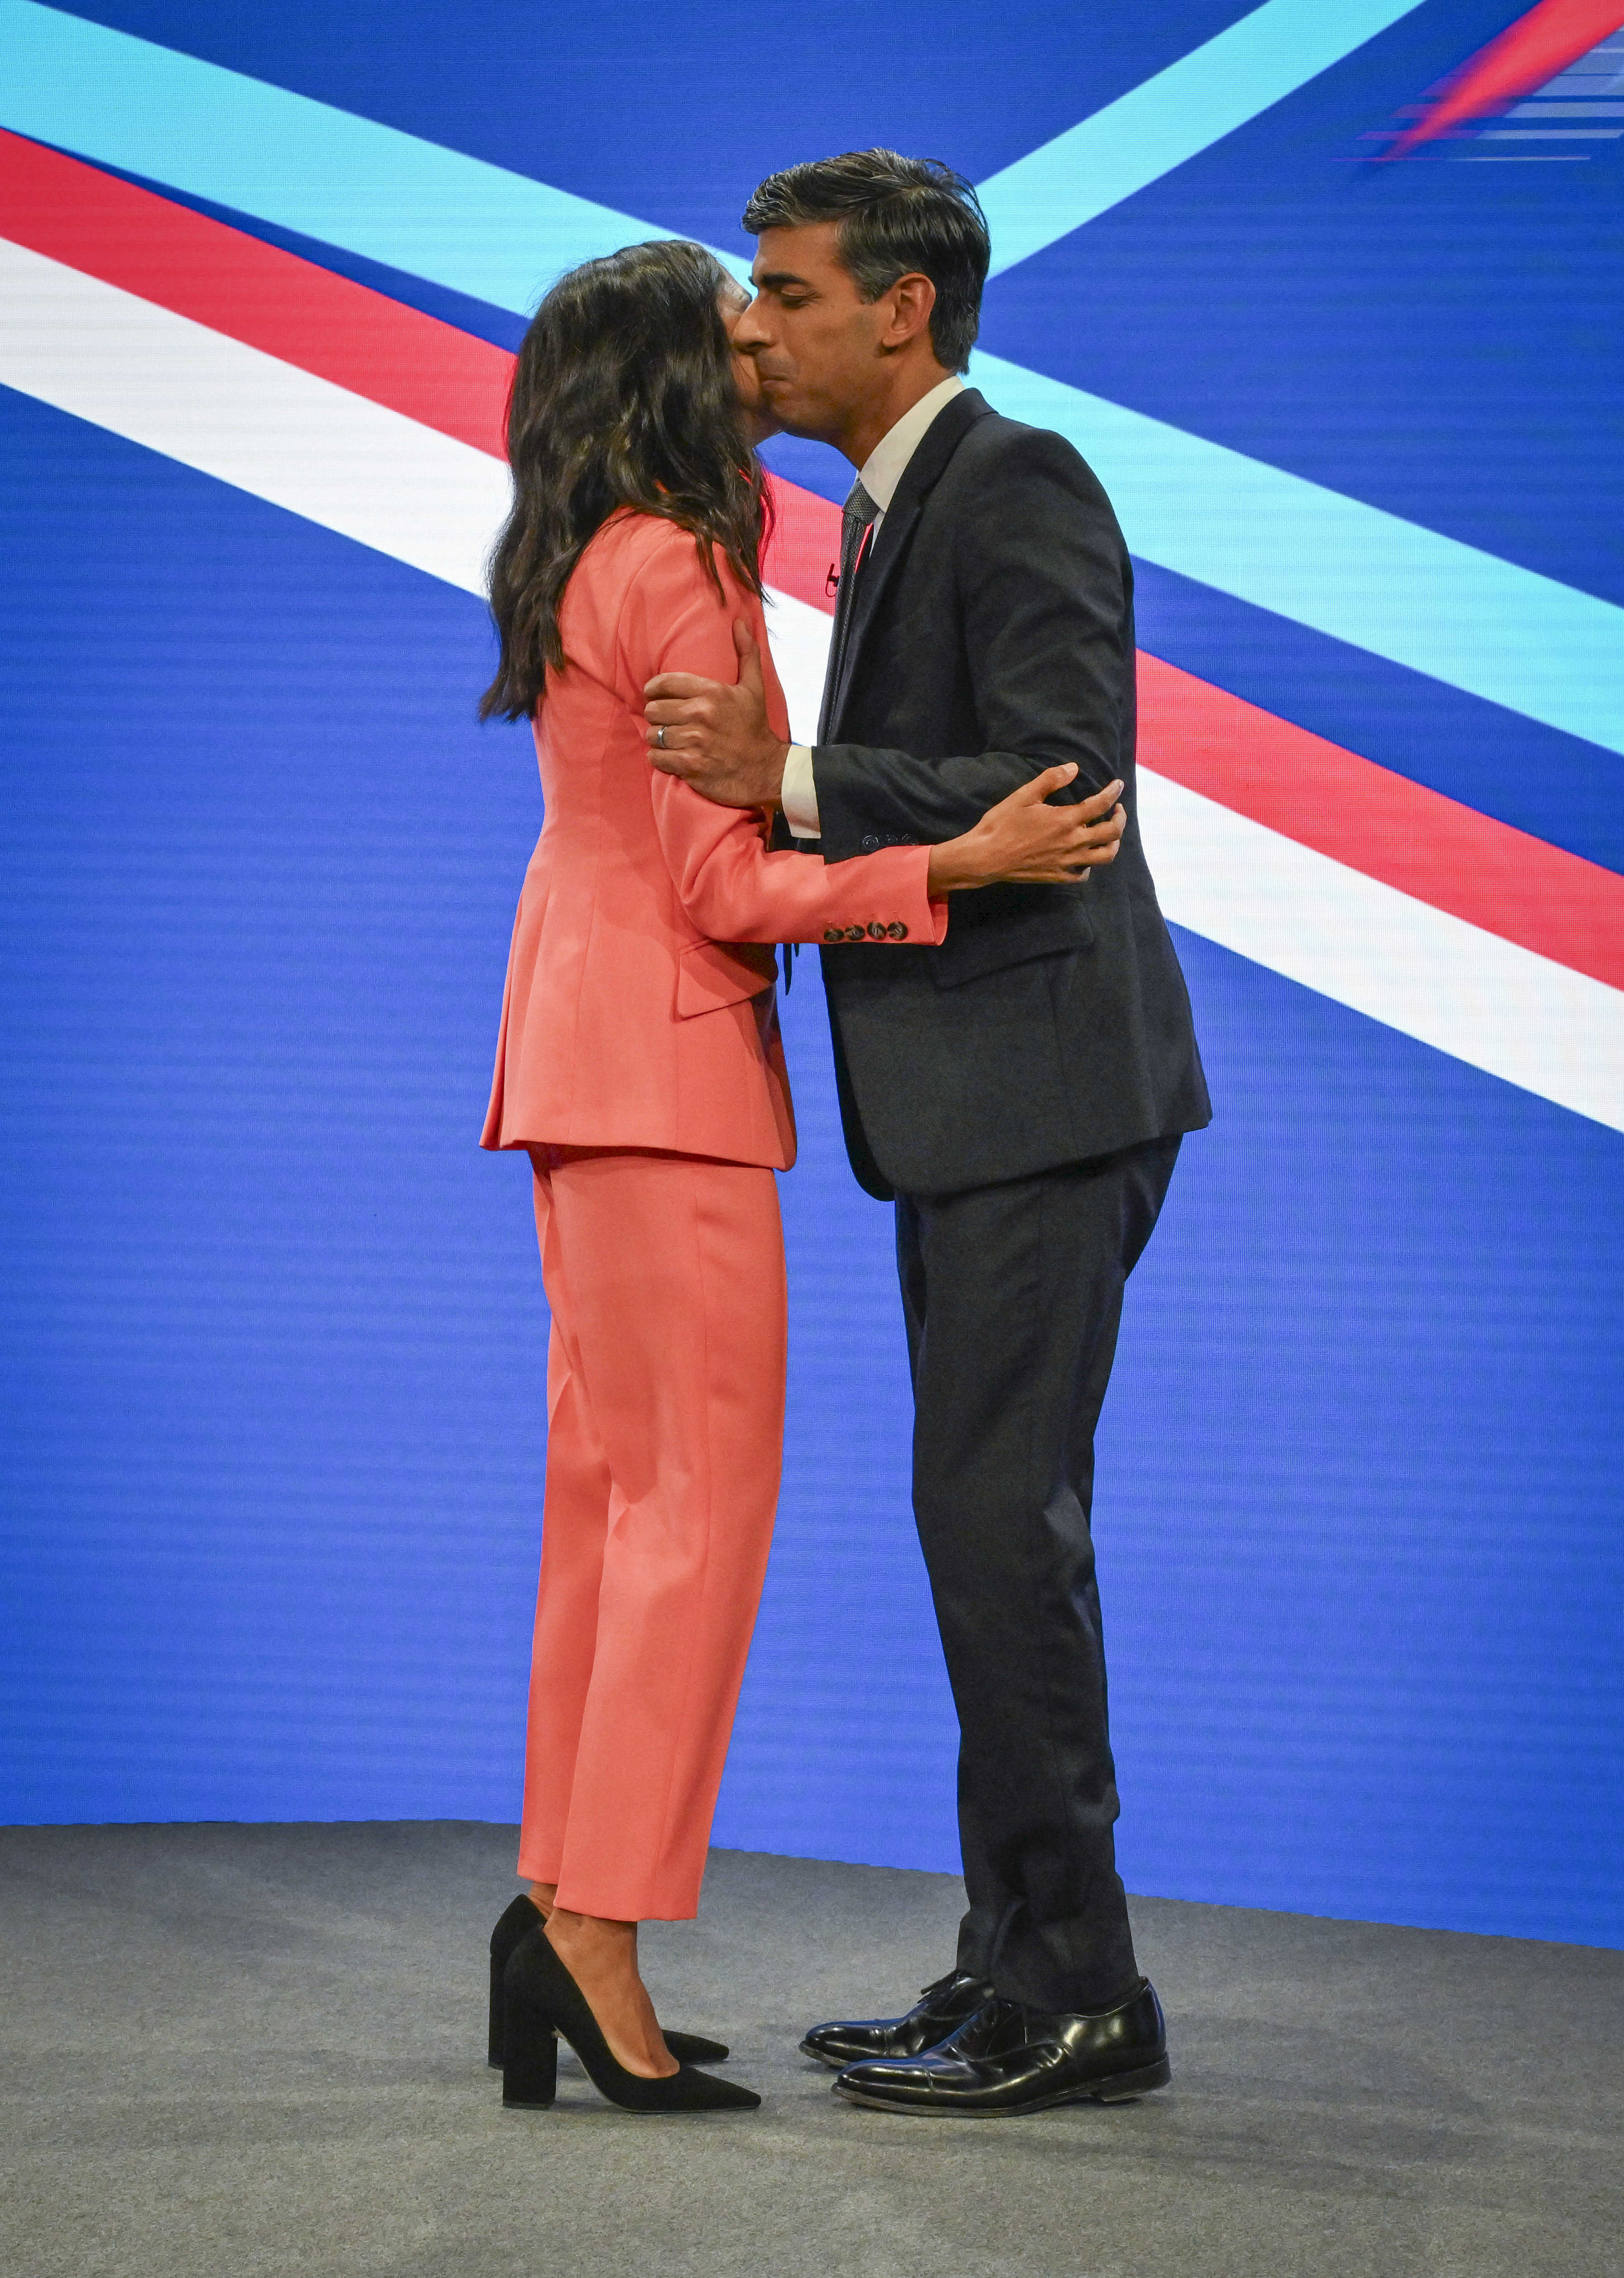 Das Paar umarmte sich vor der Rede des Premierministers auf der Bühne